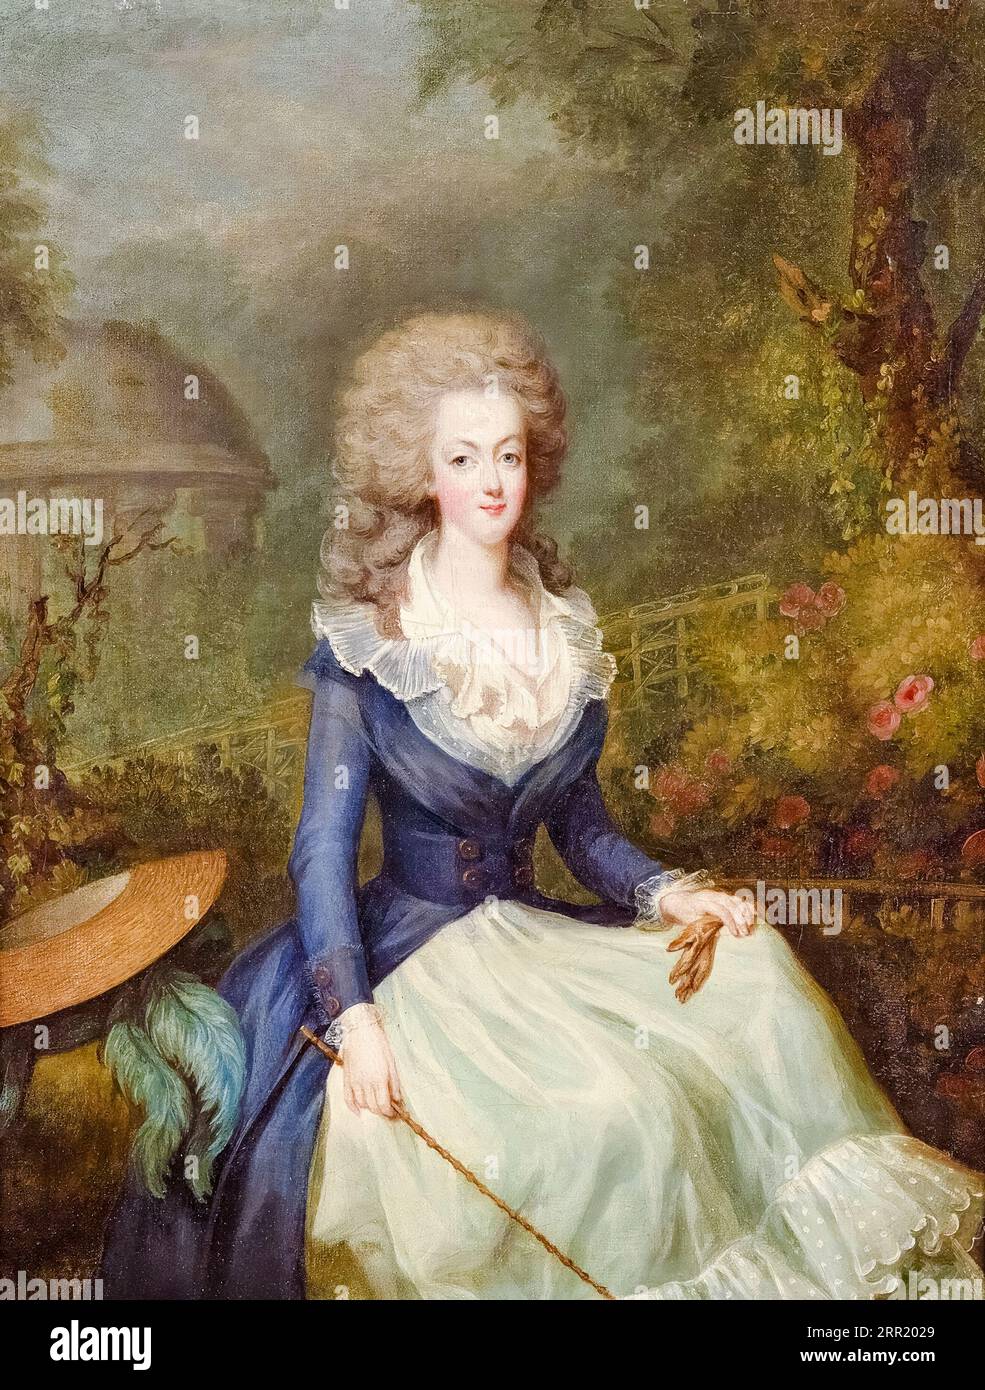 Marie-Antoinette, Reine de France (1755-1793) devant le Temple de l'Amour au Château de Versailles, portrait à l'huile sur toile de Jean-Baptiste André Gautier-Dagoty, 1780 Banque D'Images